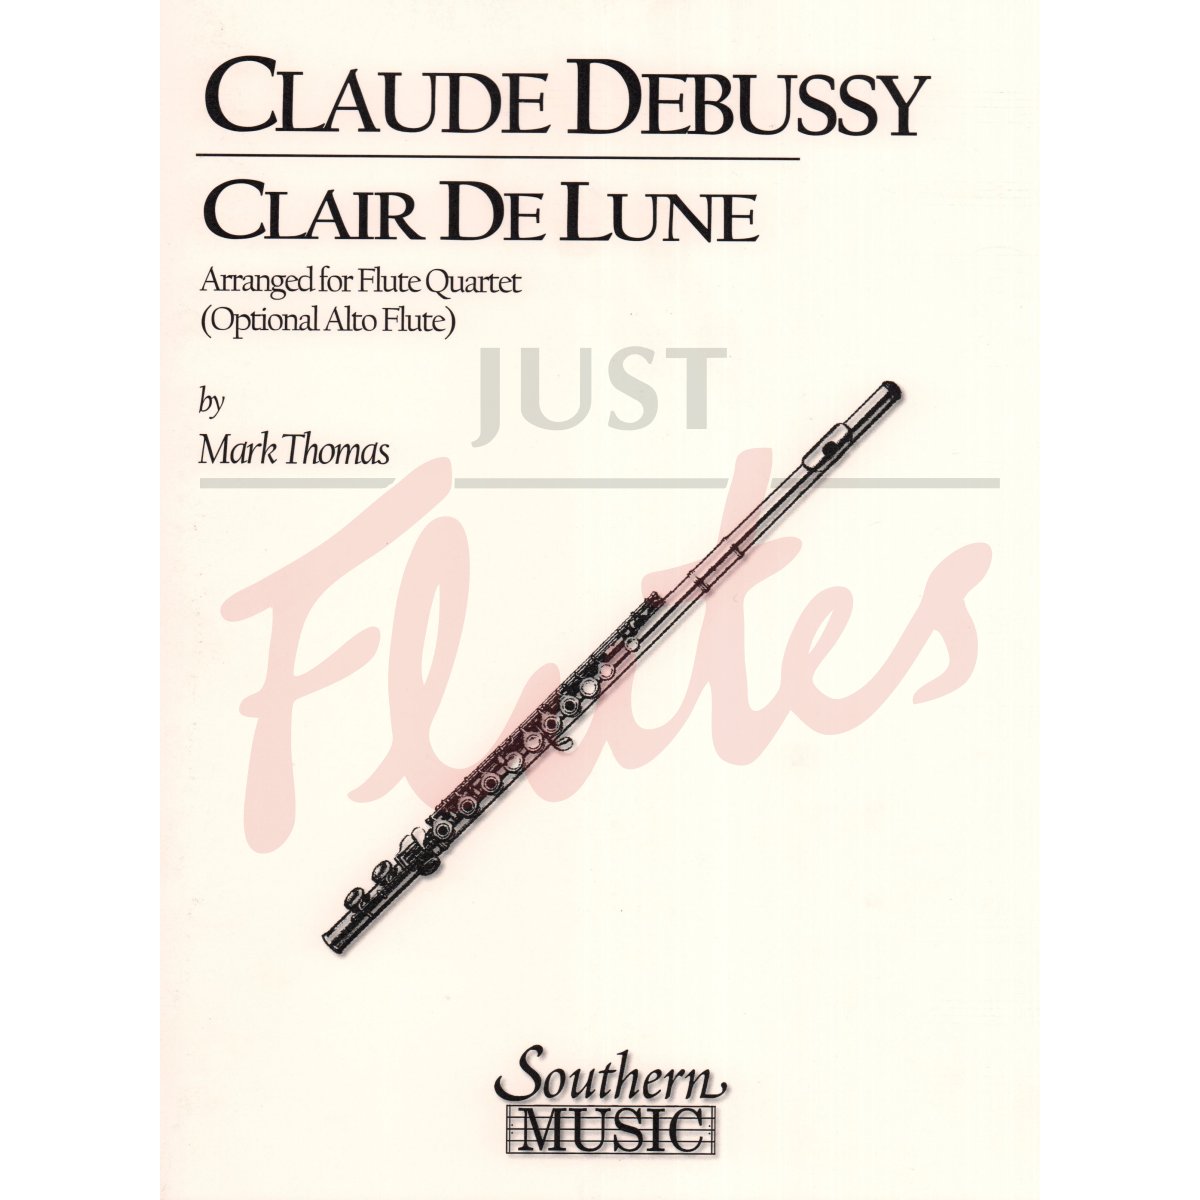 Clair de Lune for Flute Quartet